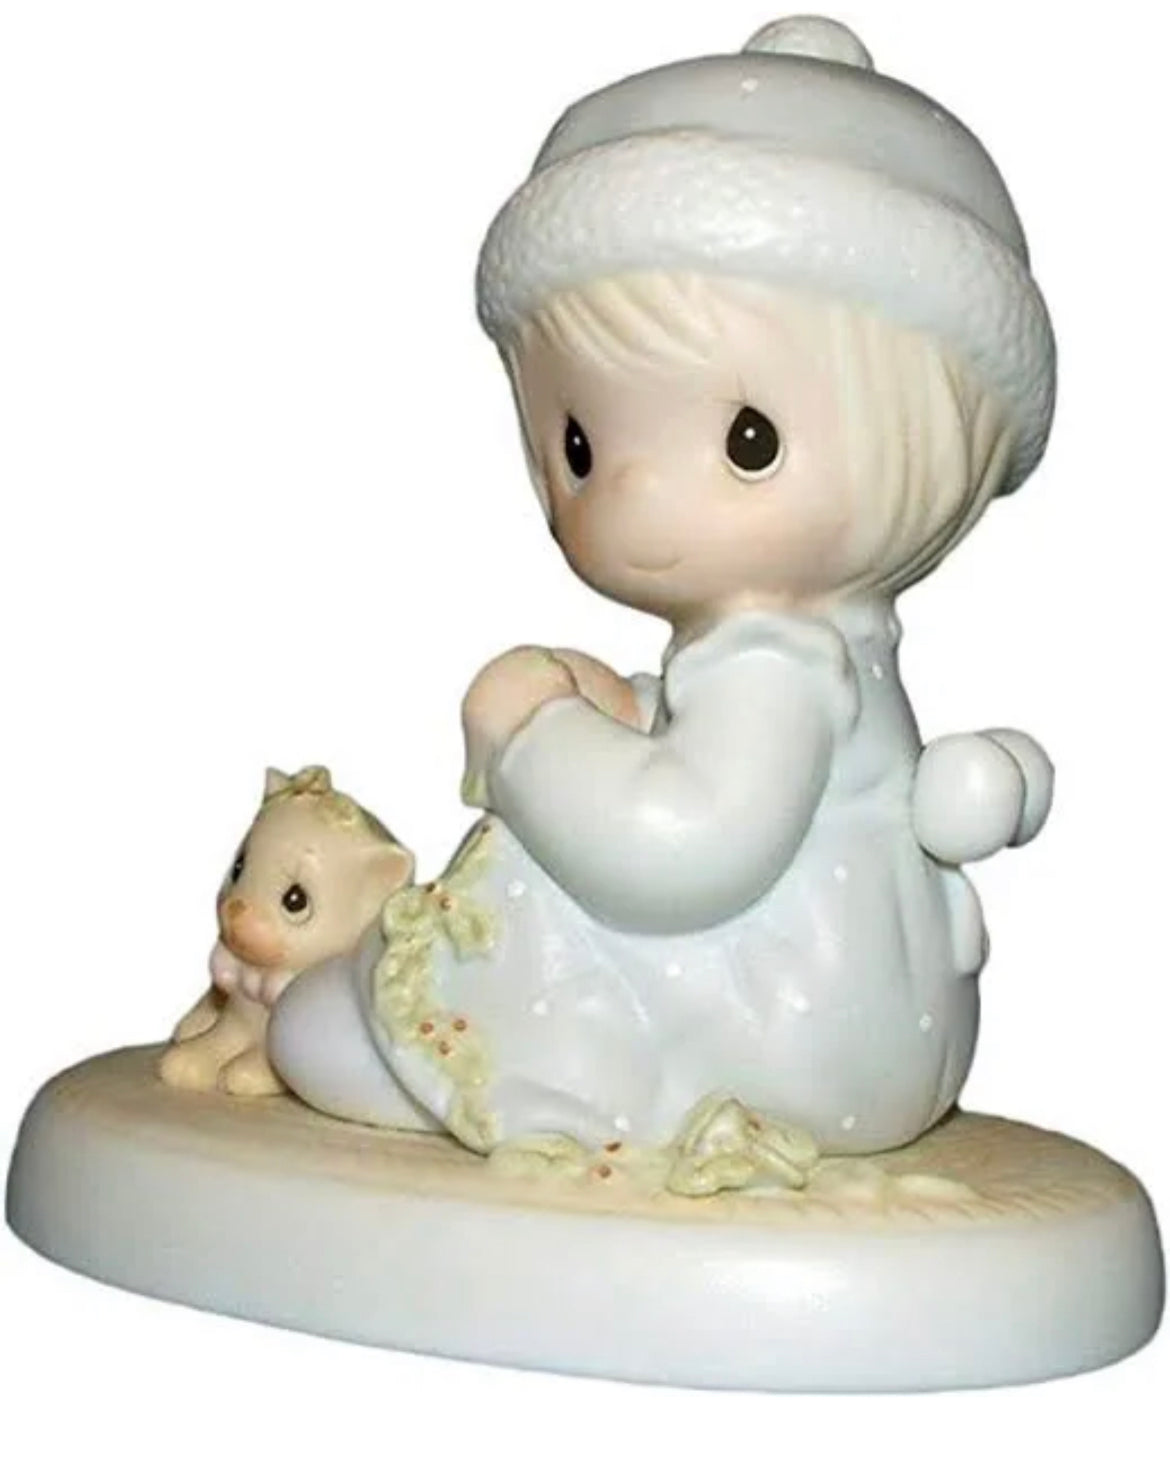 Meowie Christmas - Precious Moment Figurine